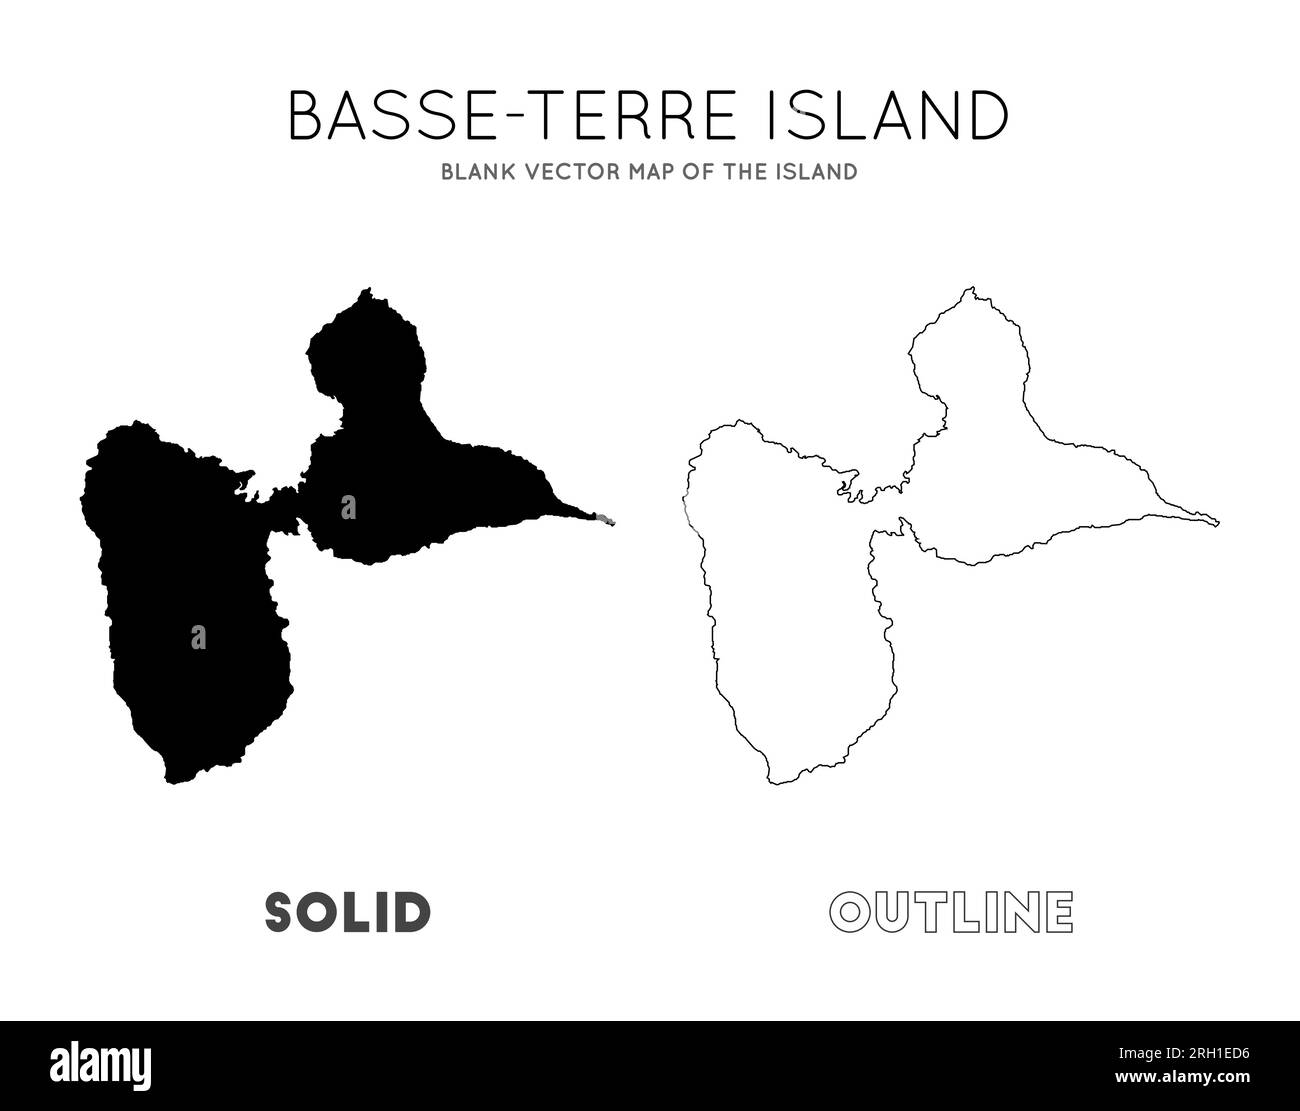 Carte de Basse-Terre Island. Borders of Basse-Terre Island pour votre infographie. Illustration vectorielle. Illustration de Vecteur